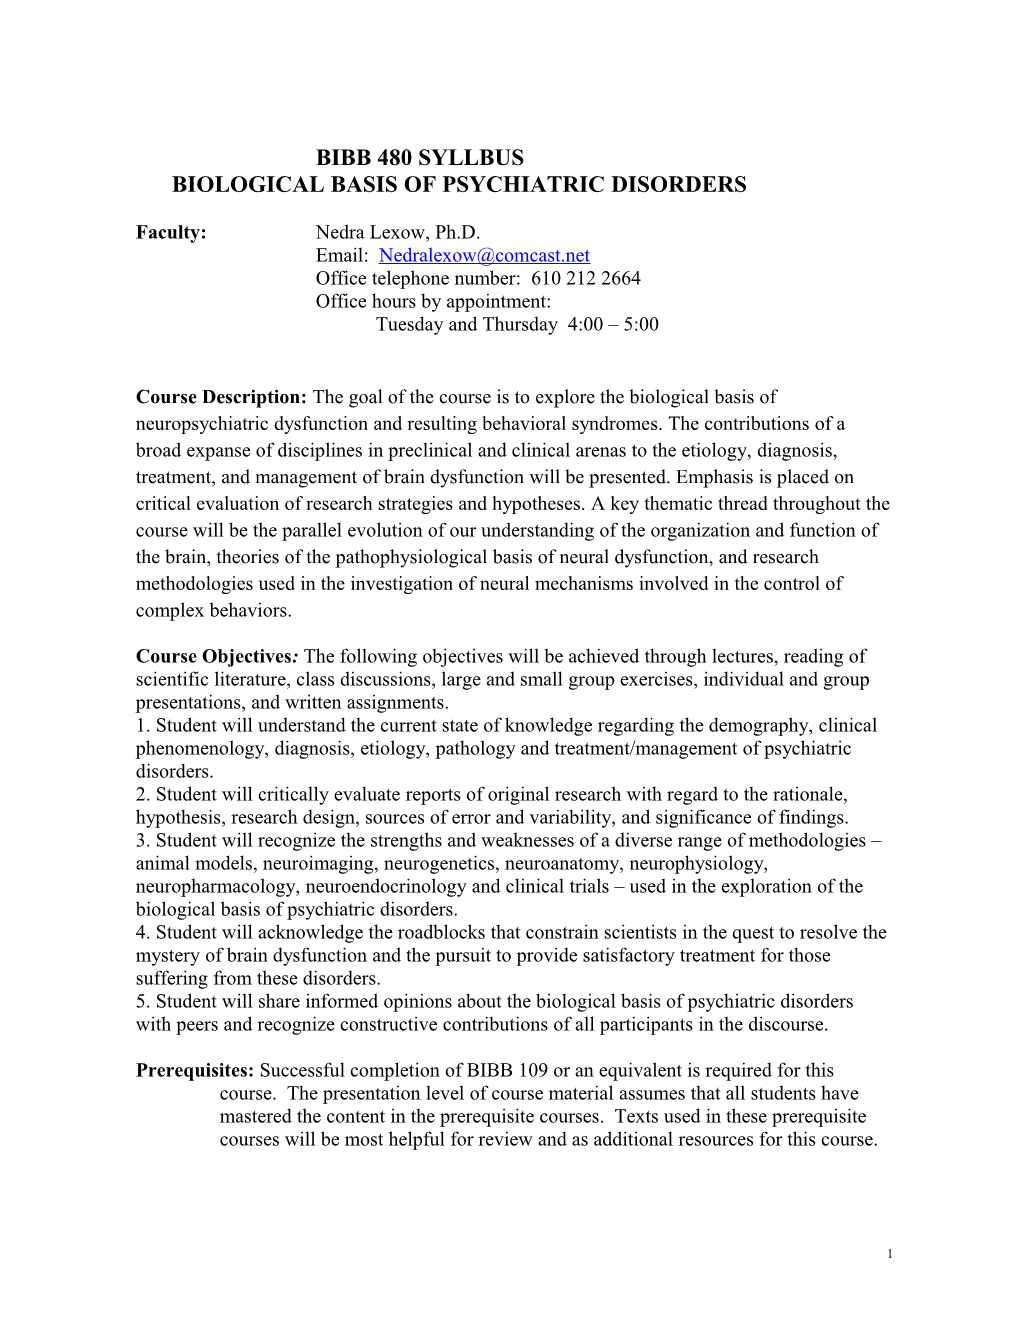 Bibb 380: Biological Basis of Psychiatric Disorders